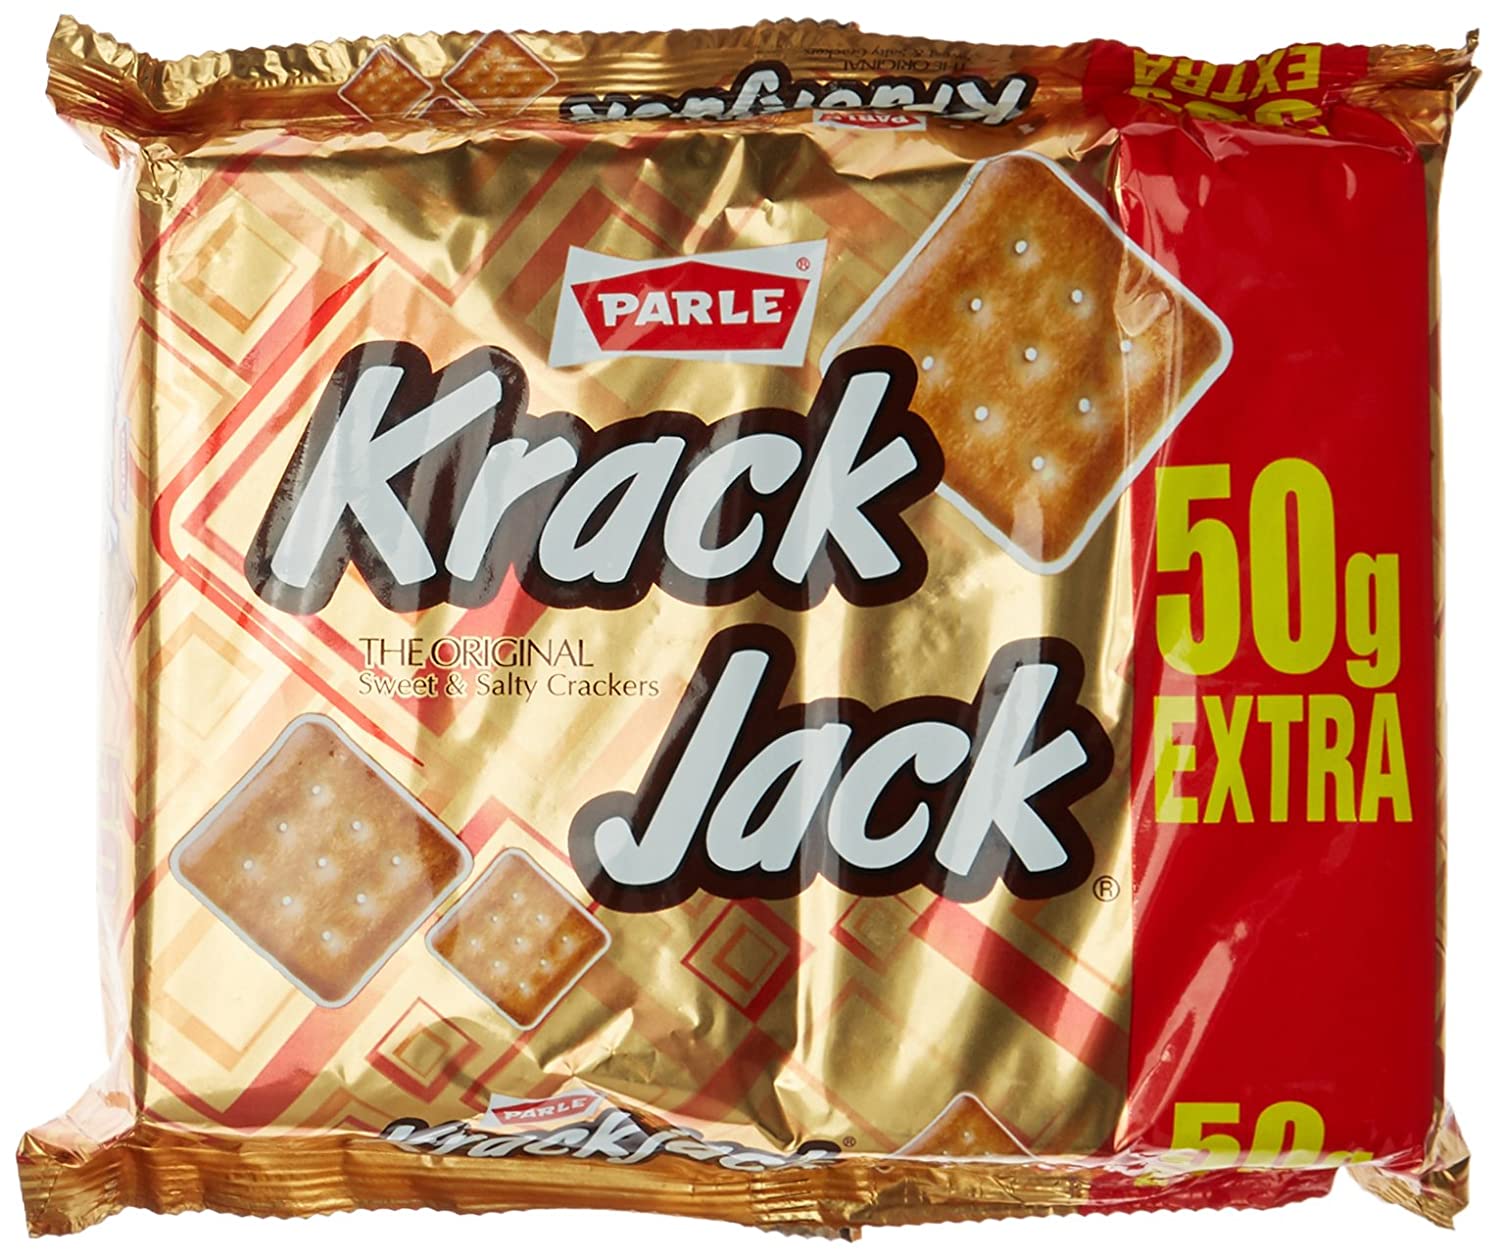 Parle Krack Jack Biscuits 200g+50g=250g